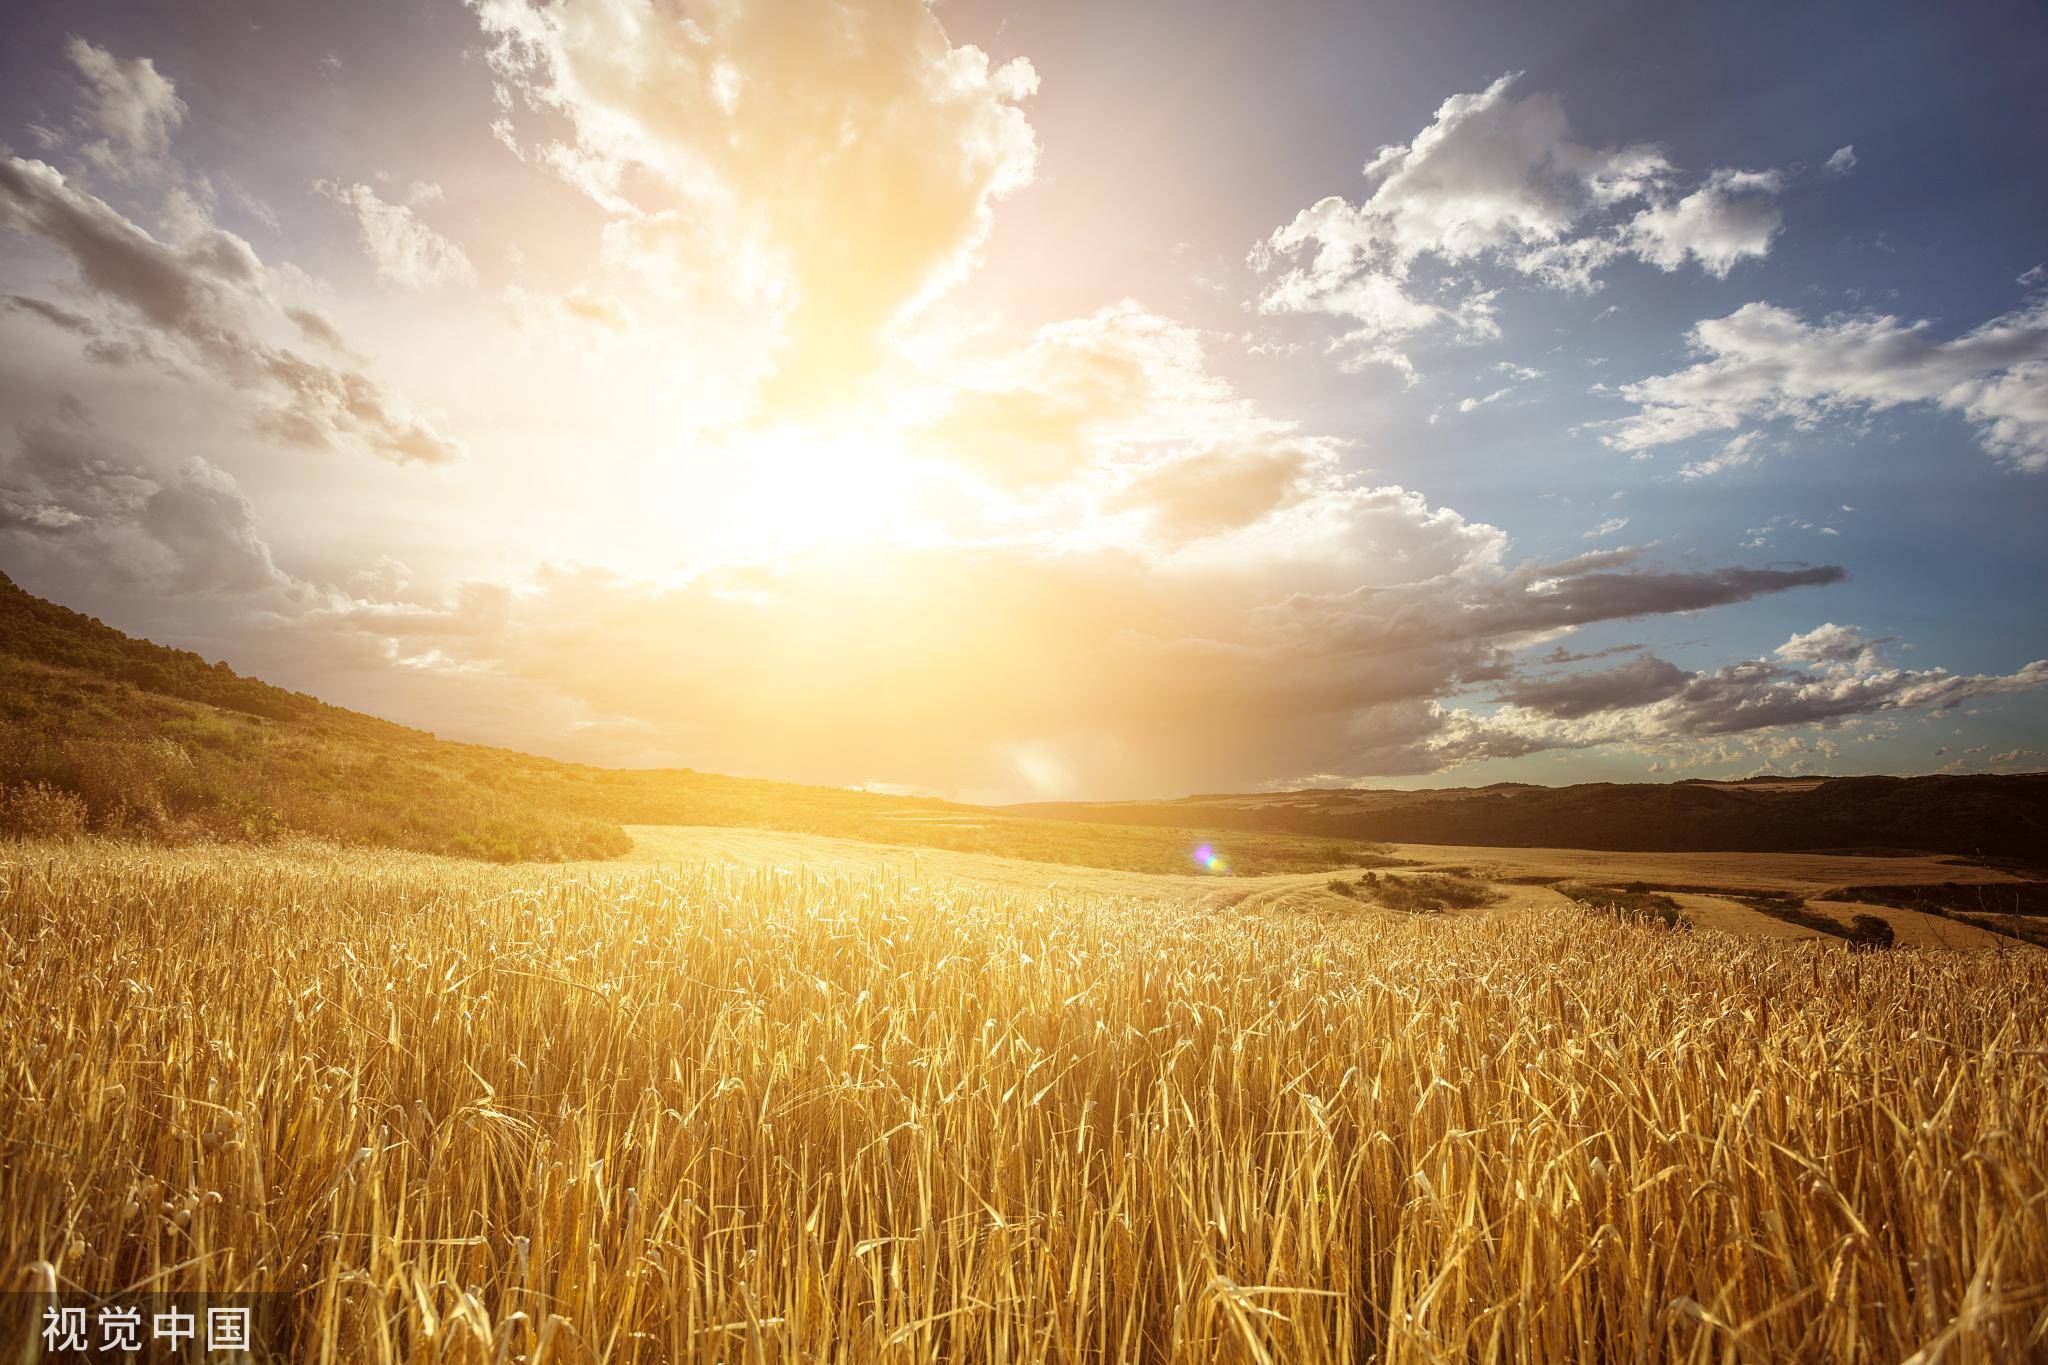 金黄小麦自然风景摄影图高清摄影大图-千库网